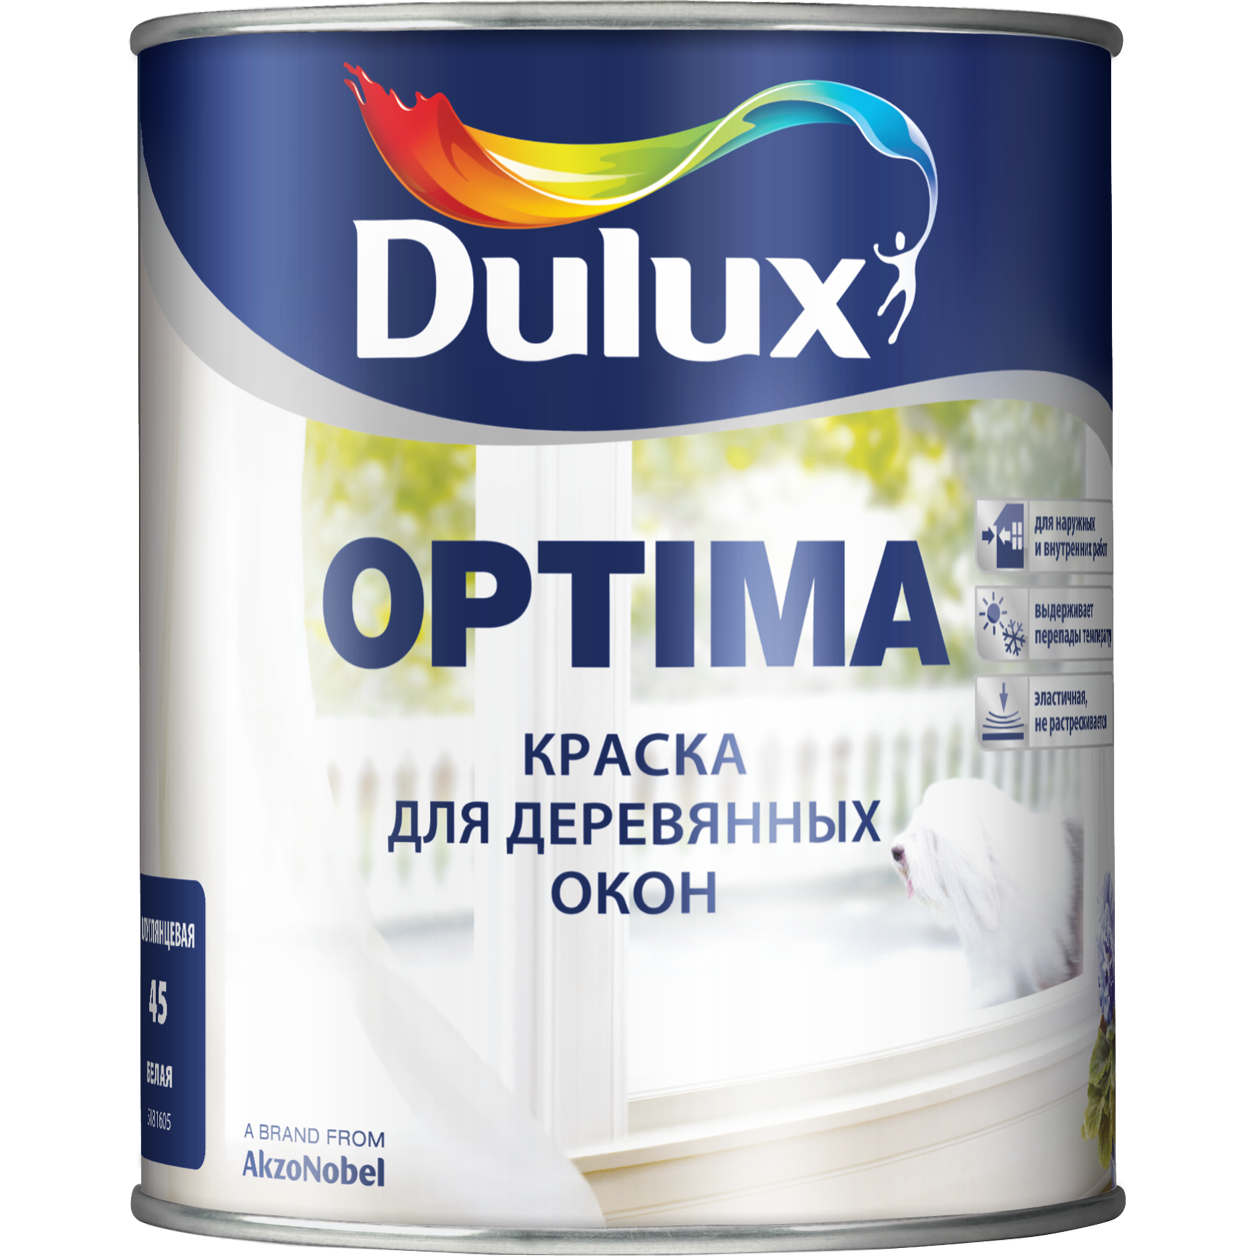 Dulux Optima краска для деревянных окон. Оптима краска эмаль алкидная. Алкидная универсальная эмаль Dulux. Краска алкидная Дулюкс. Краска для покраски без запаха